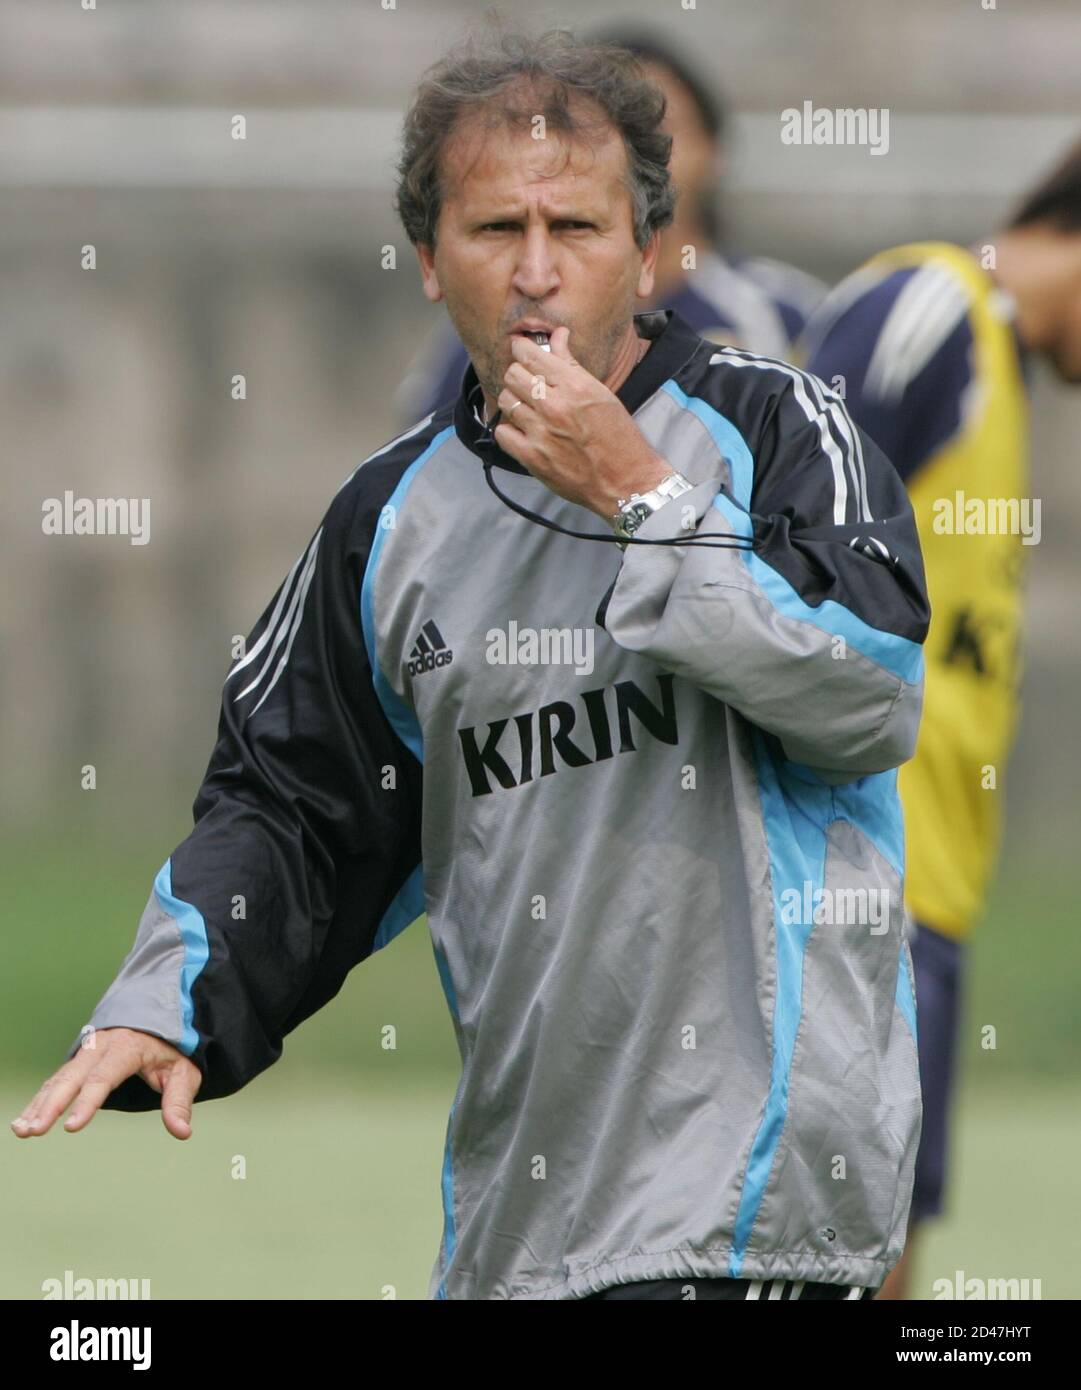 Japans Fußball-Team Cheftrainer Zico weist Spieler während einer  Trainingseinheit für den Asian Cup Fußball in Chongqing, Südwestchina, 19.  Juli 2004. REUTERS/Issei Kato IK/SH Stockfotografie - Alamy